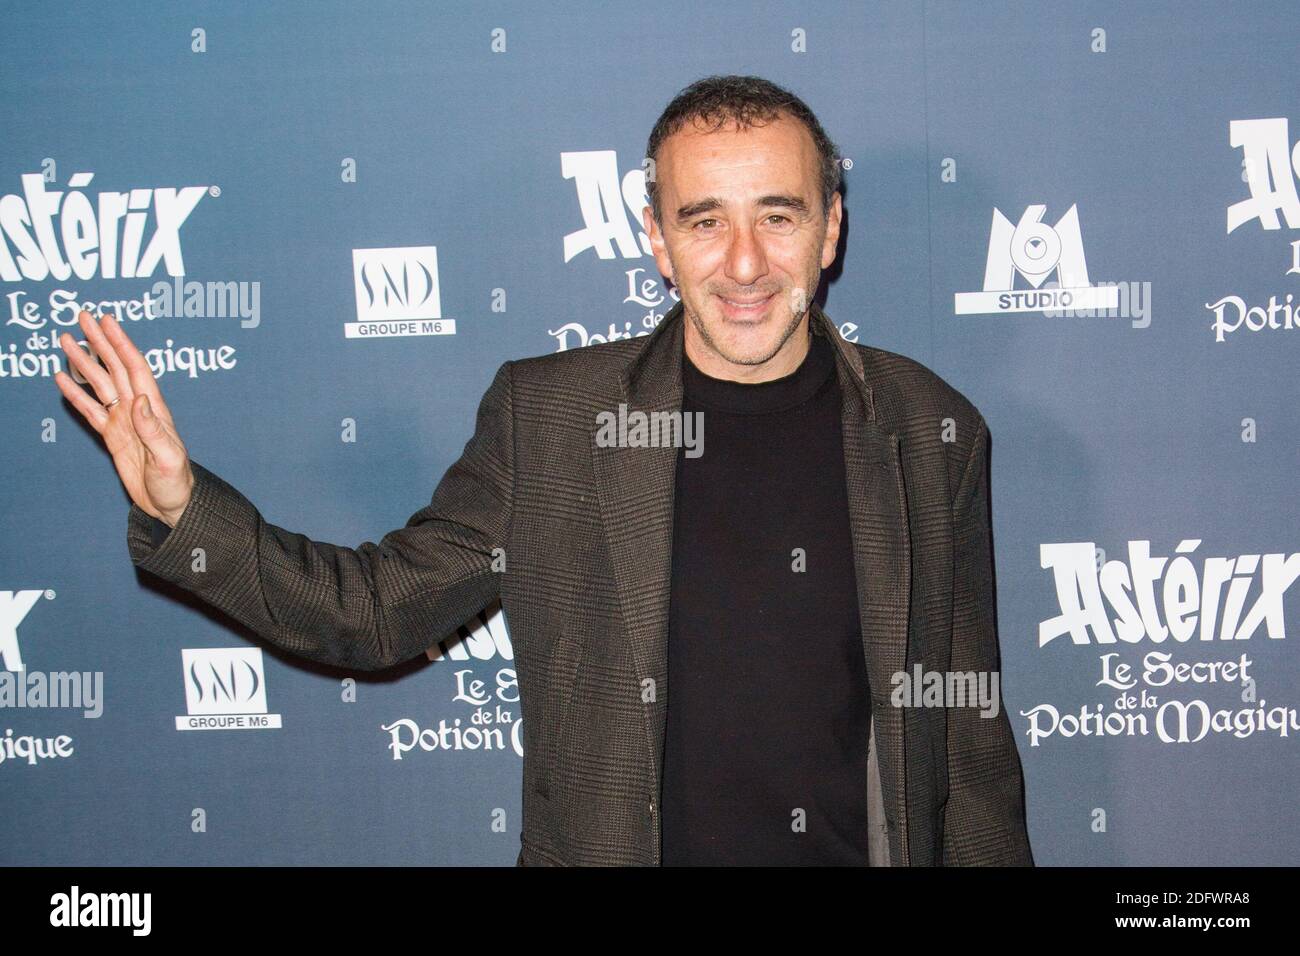 Elie Semoun attend 'Asterix - Le Secret de la Potion Magique' Paris ...